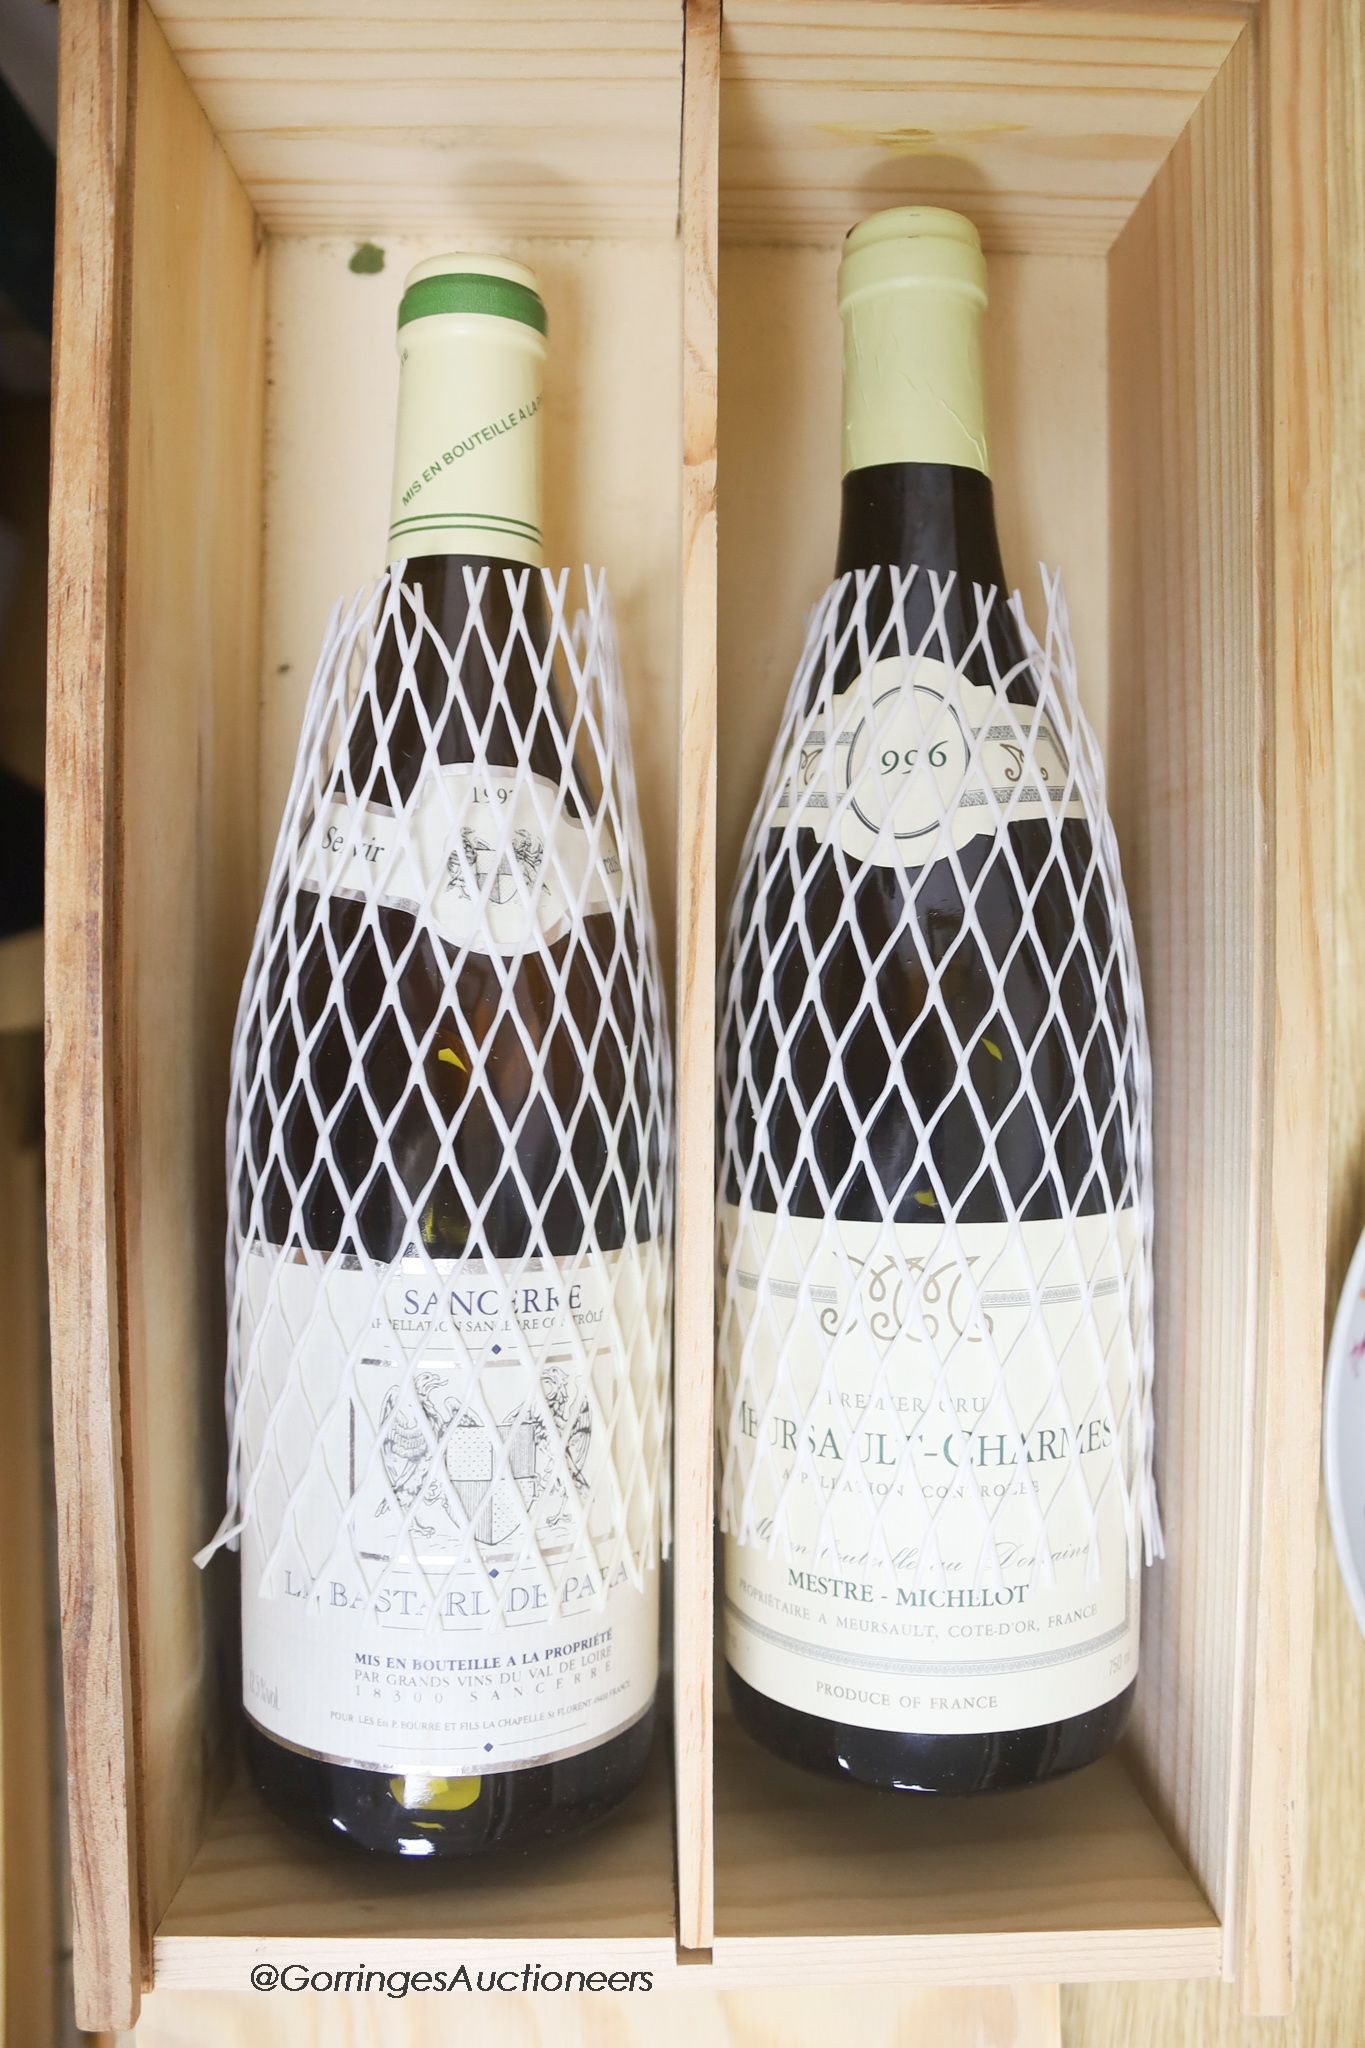 A bottle of Sancerre 1997 and a bottle of Meursault-Charmes 1996